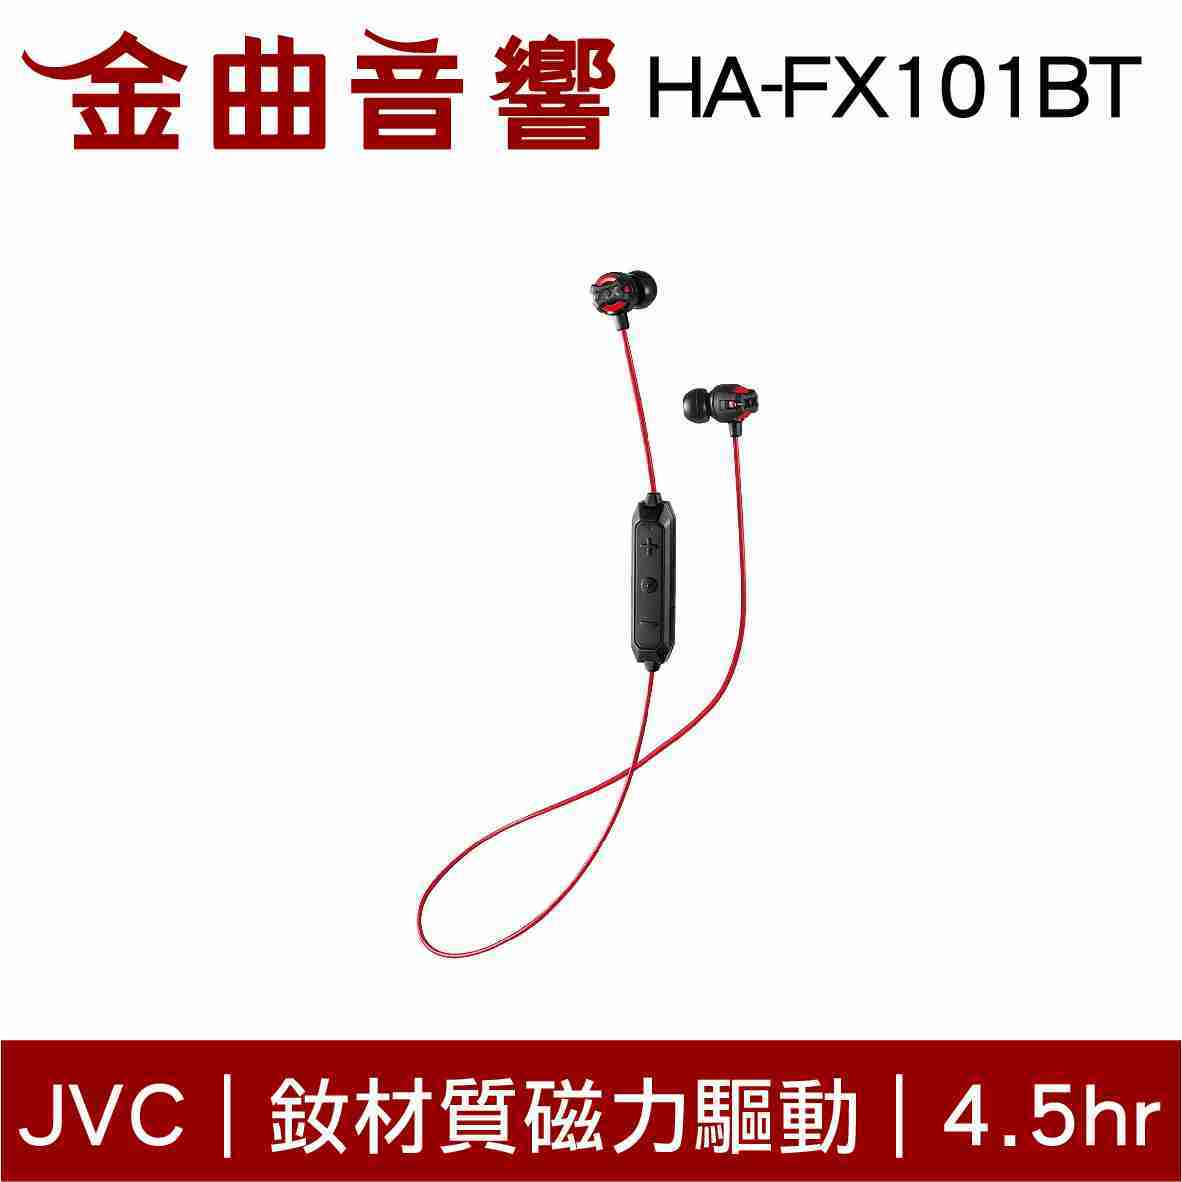 JVC HA-FX101BT 白色 釹材質磁力驅動 藍芽4.1 無線耳機 | 金曲音響